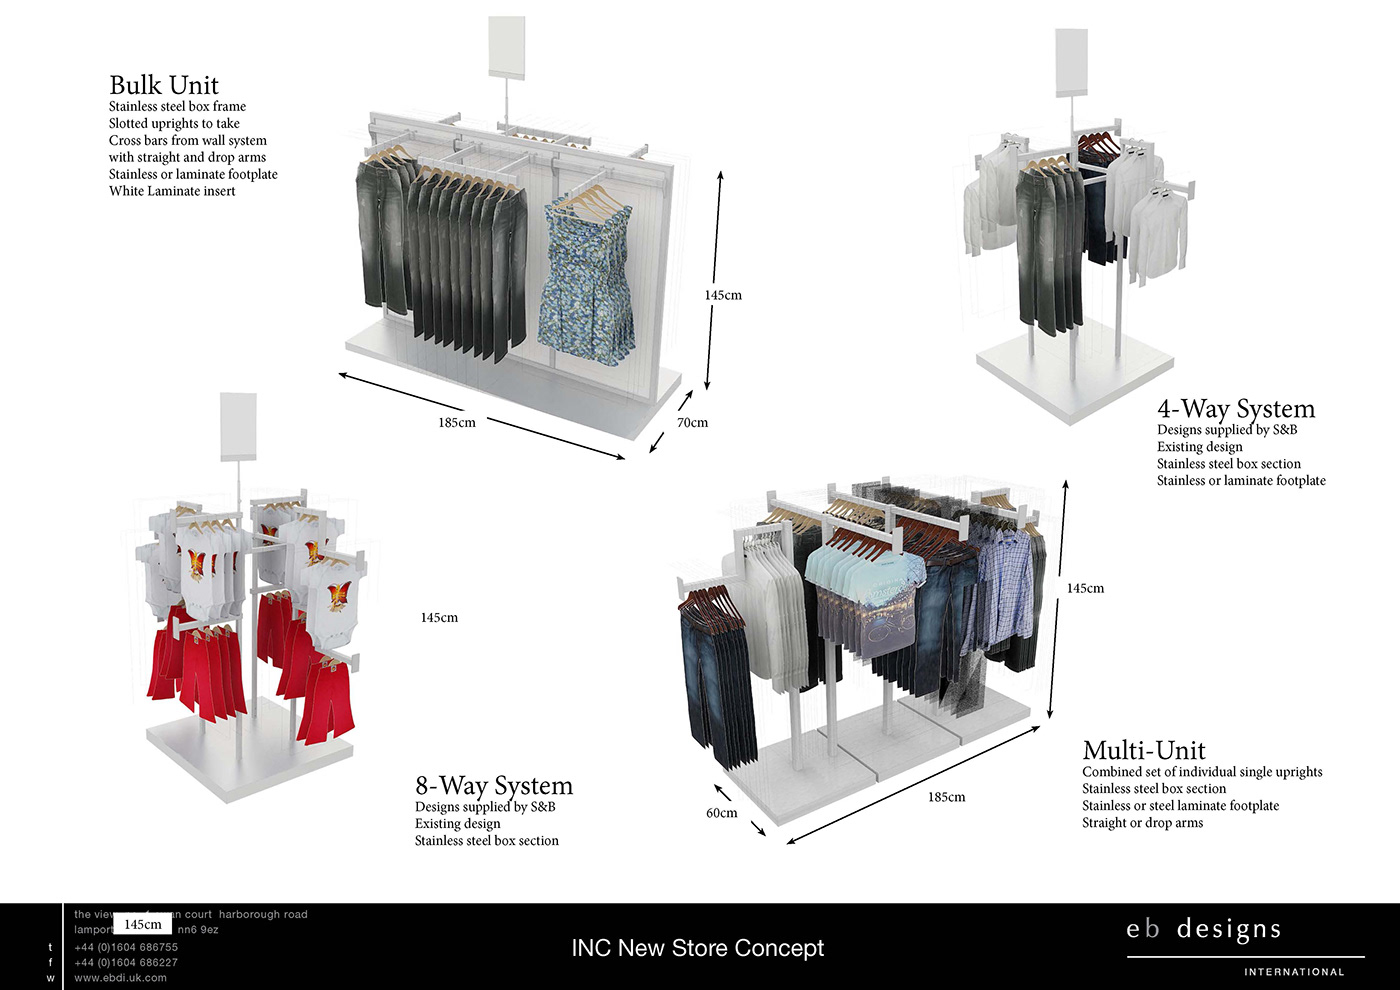 #Fashion #retail #Fashion Retail #STORE DESIGN #Fixture Design #interior design #prototypes #finishes